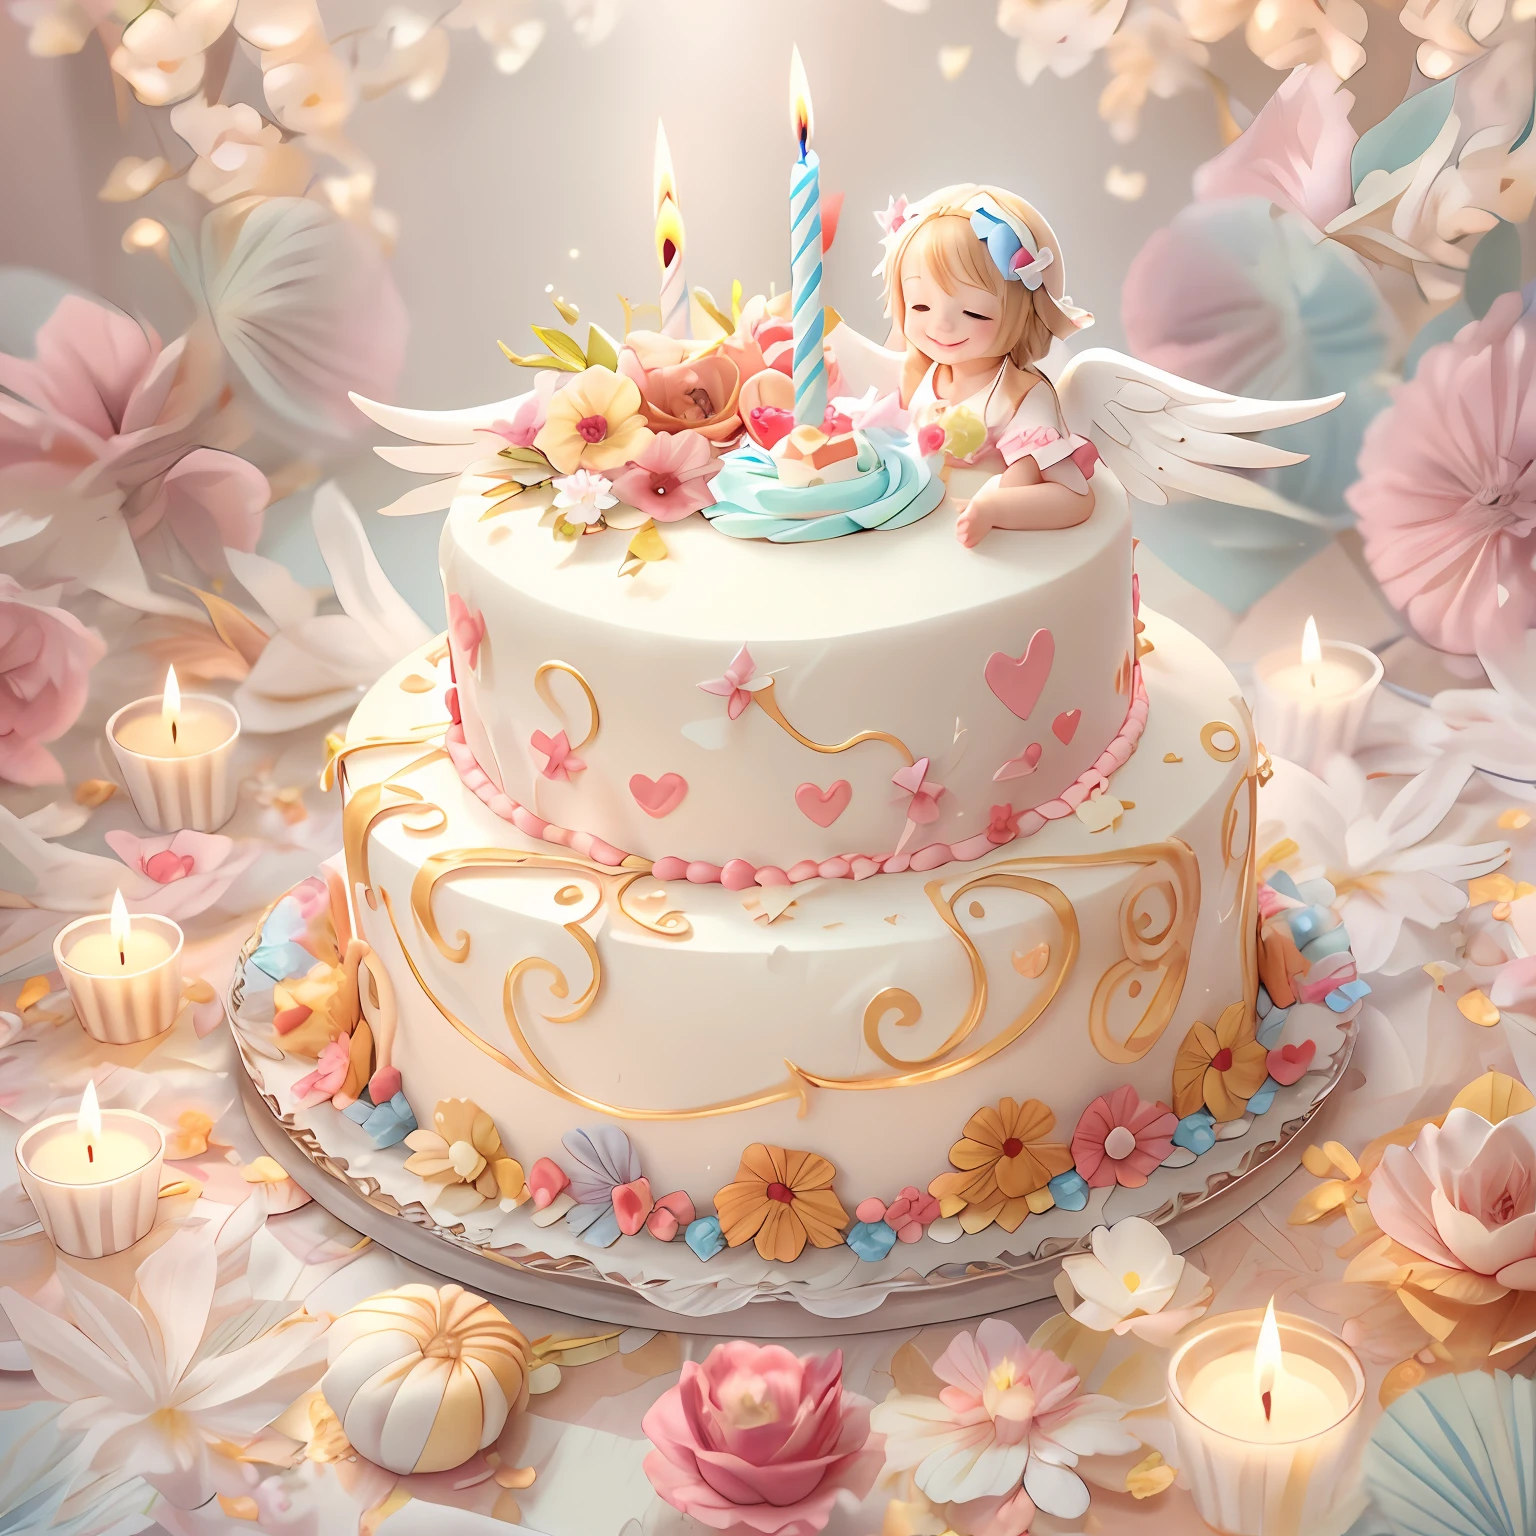 Bênçãos dos Anjos､fundo brilhante、marca de coração、Feliz aniversário、ternura､Um sorriso、um bolo